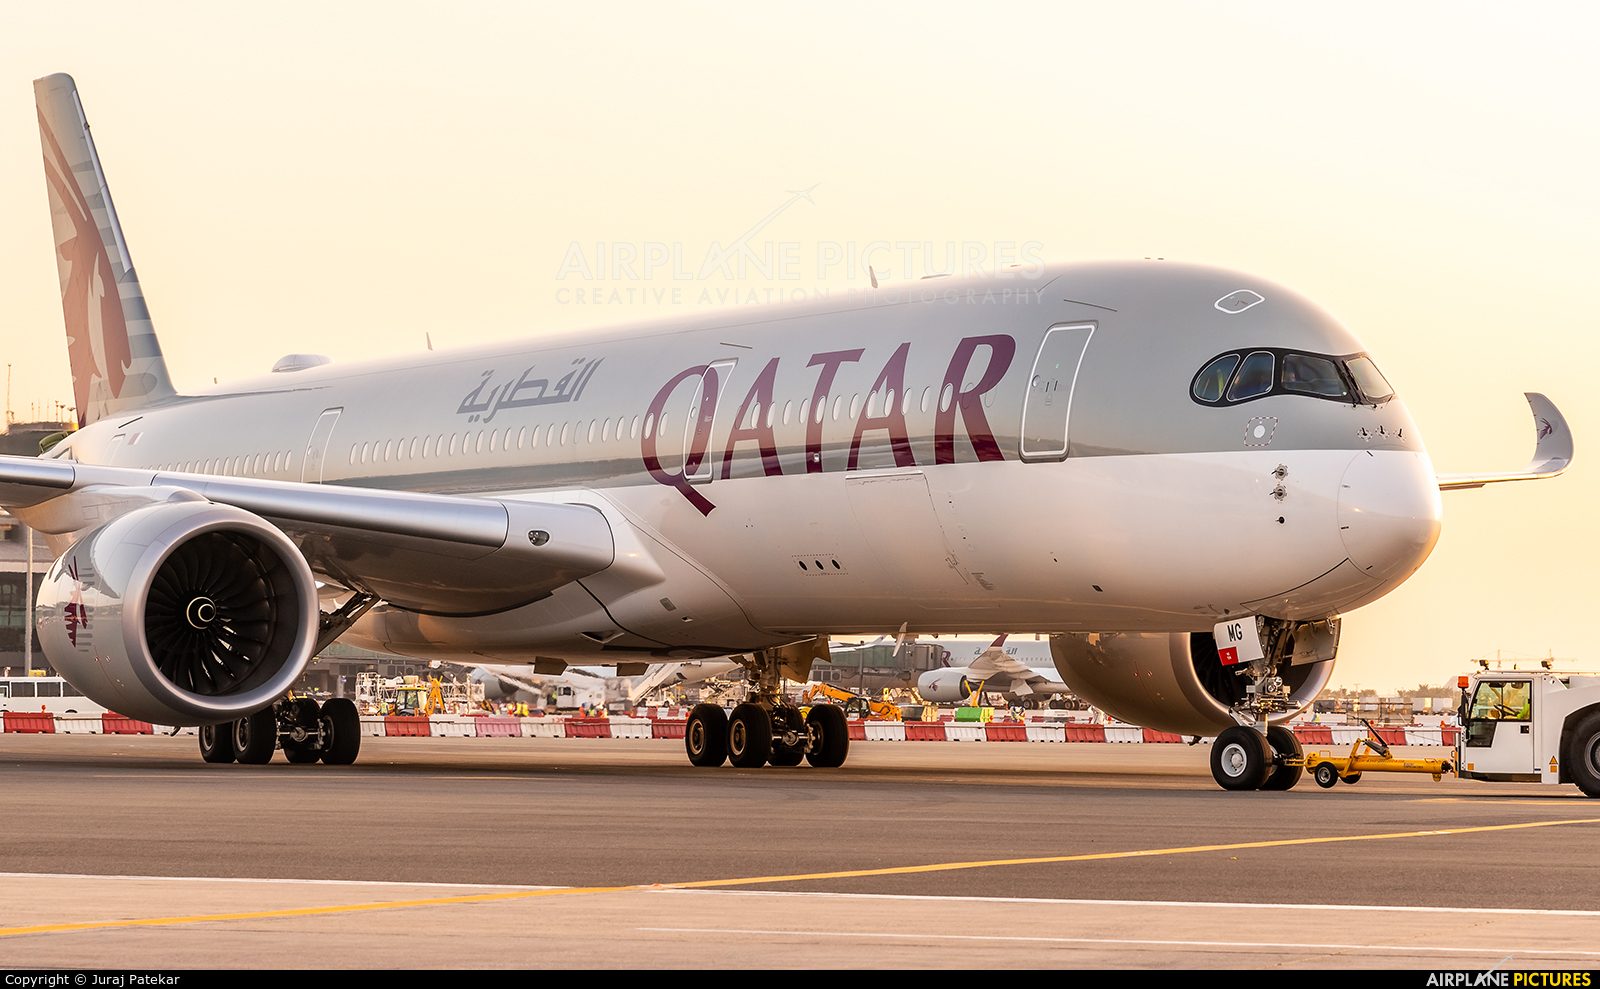 Qatar Airways A7-AMG aircraft at New Doha